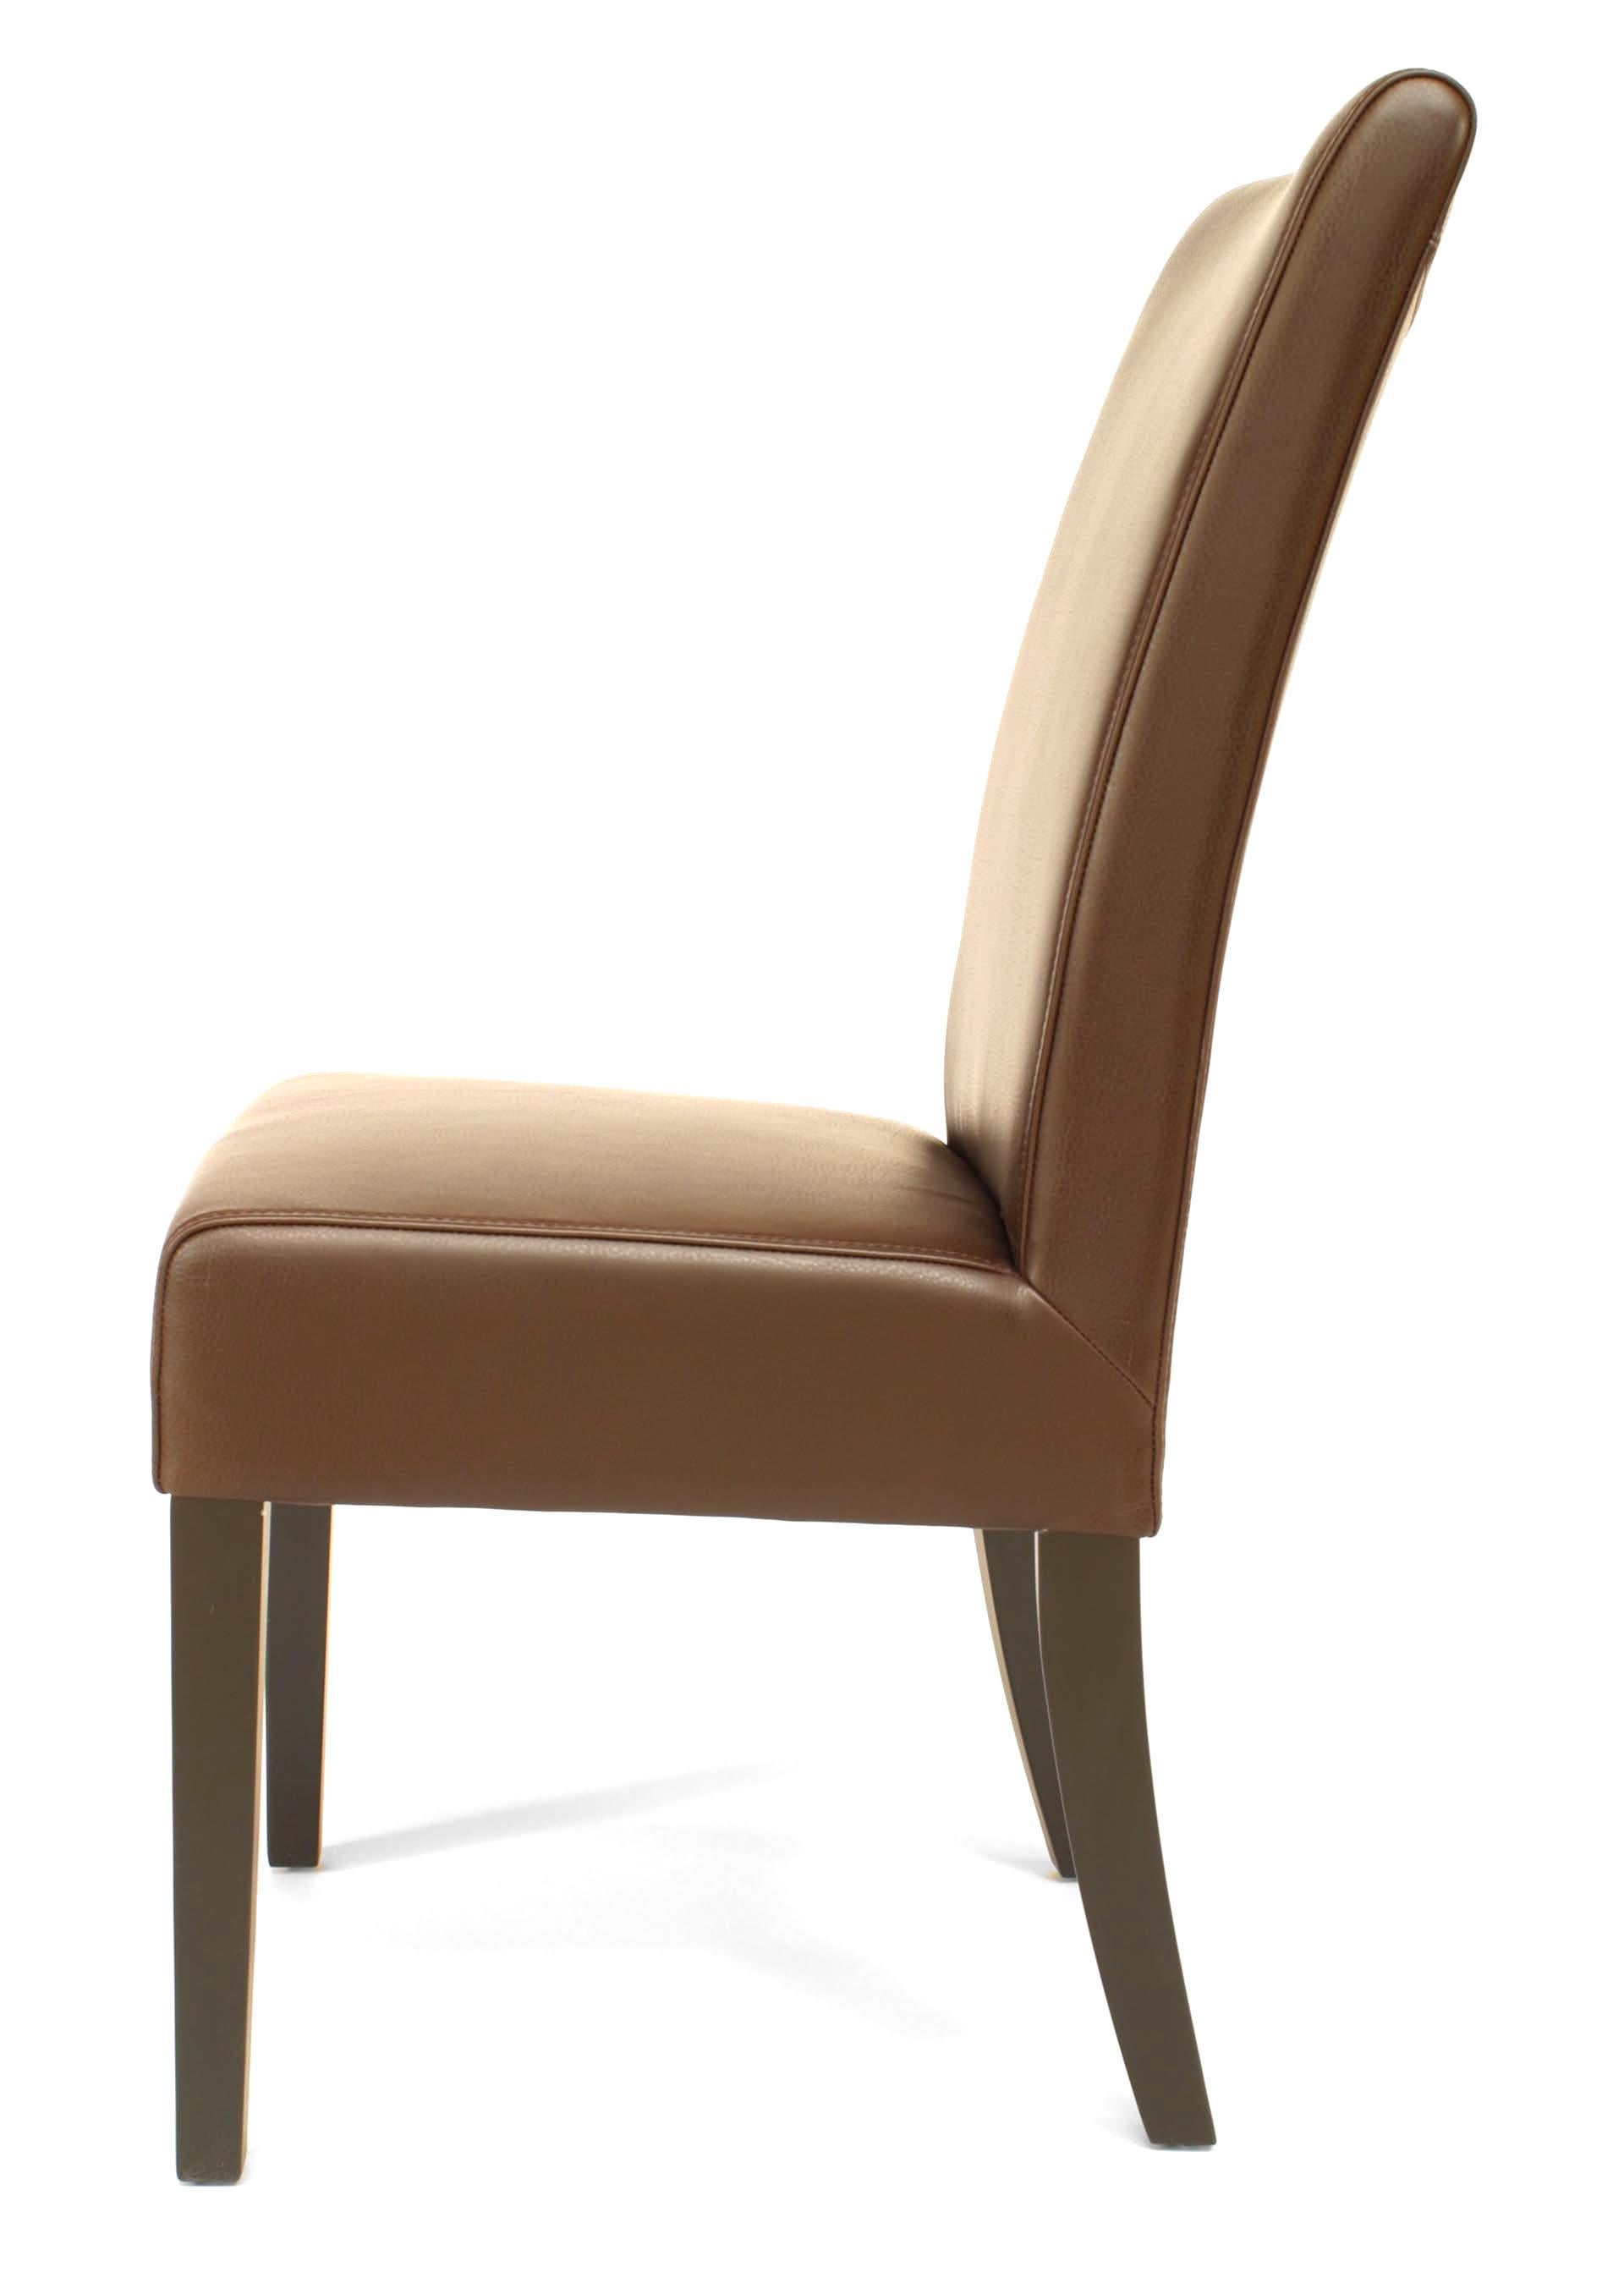 16 chaises latérales Parsons marron, de style moderne du milieu du siècle, avec siège et dossier en cuir. (prix unitaire).